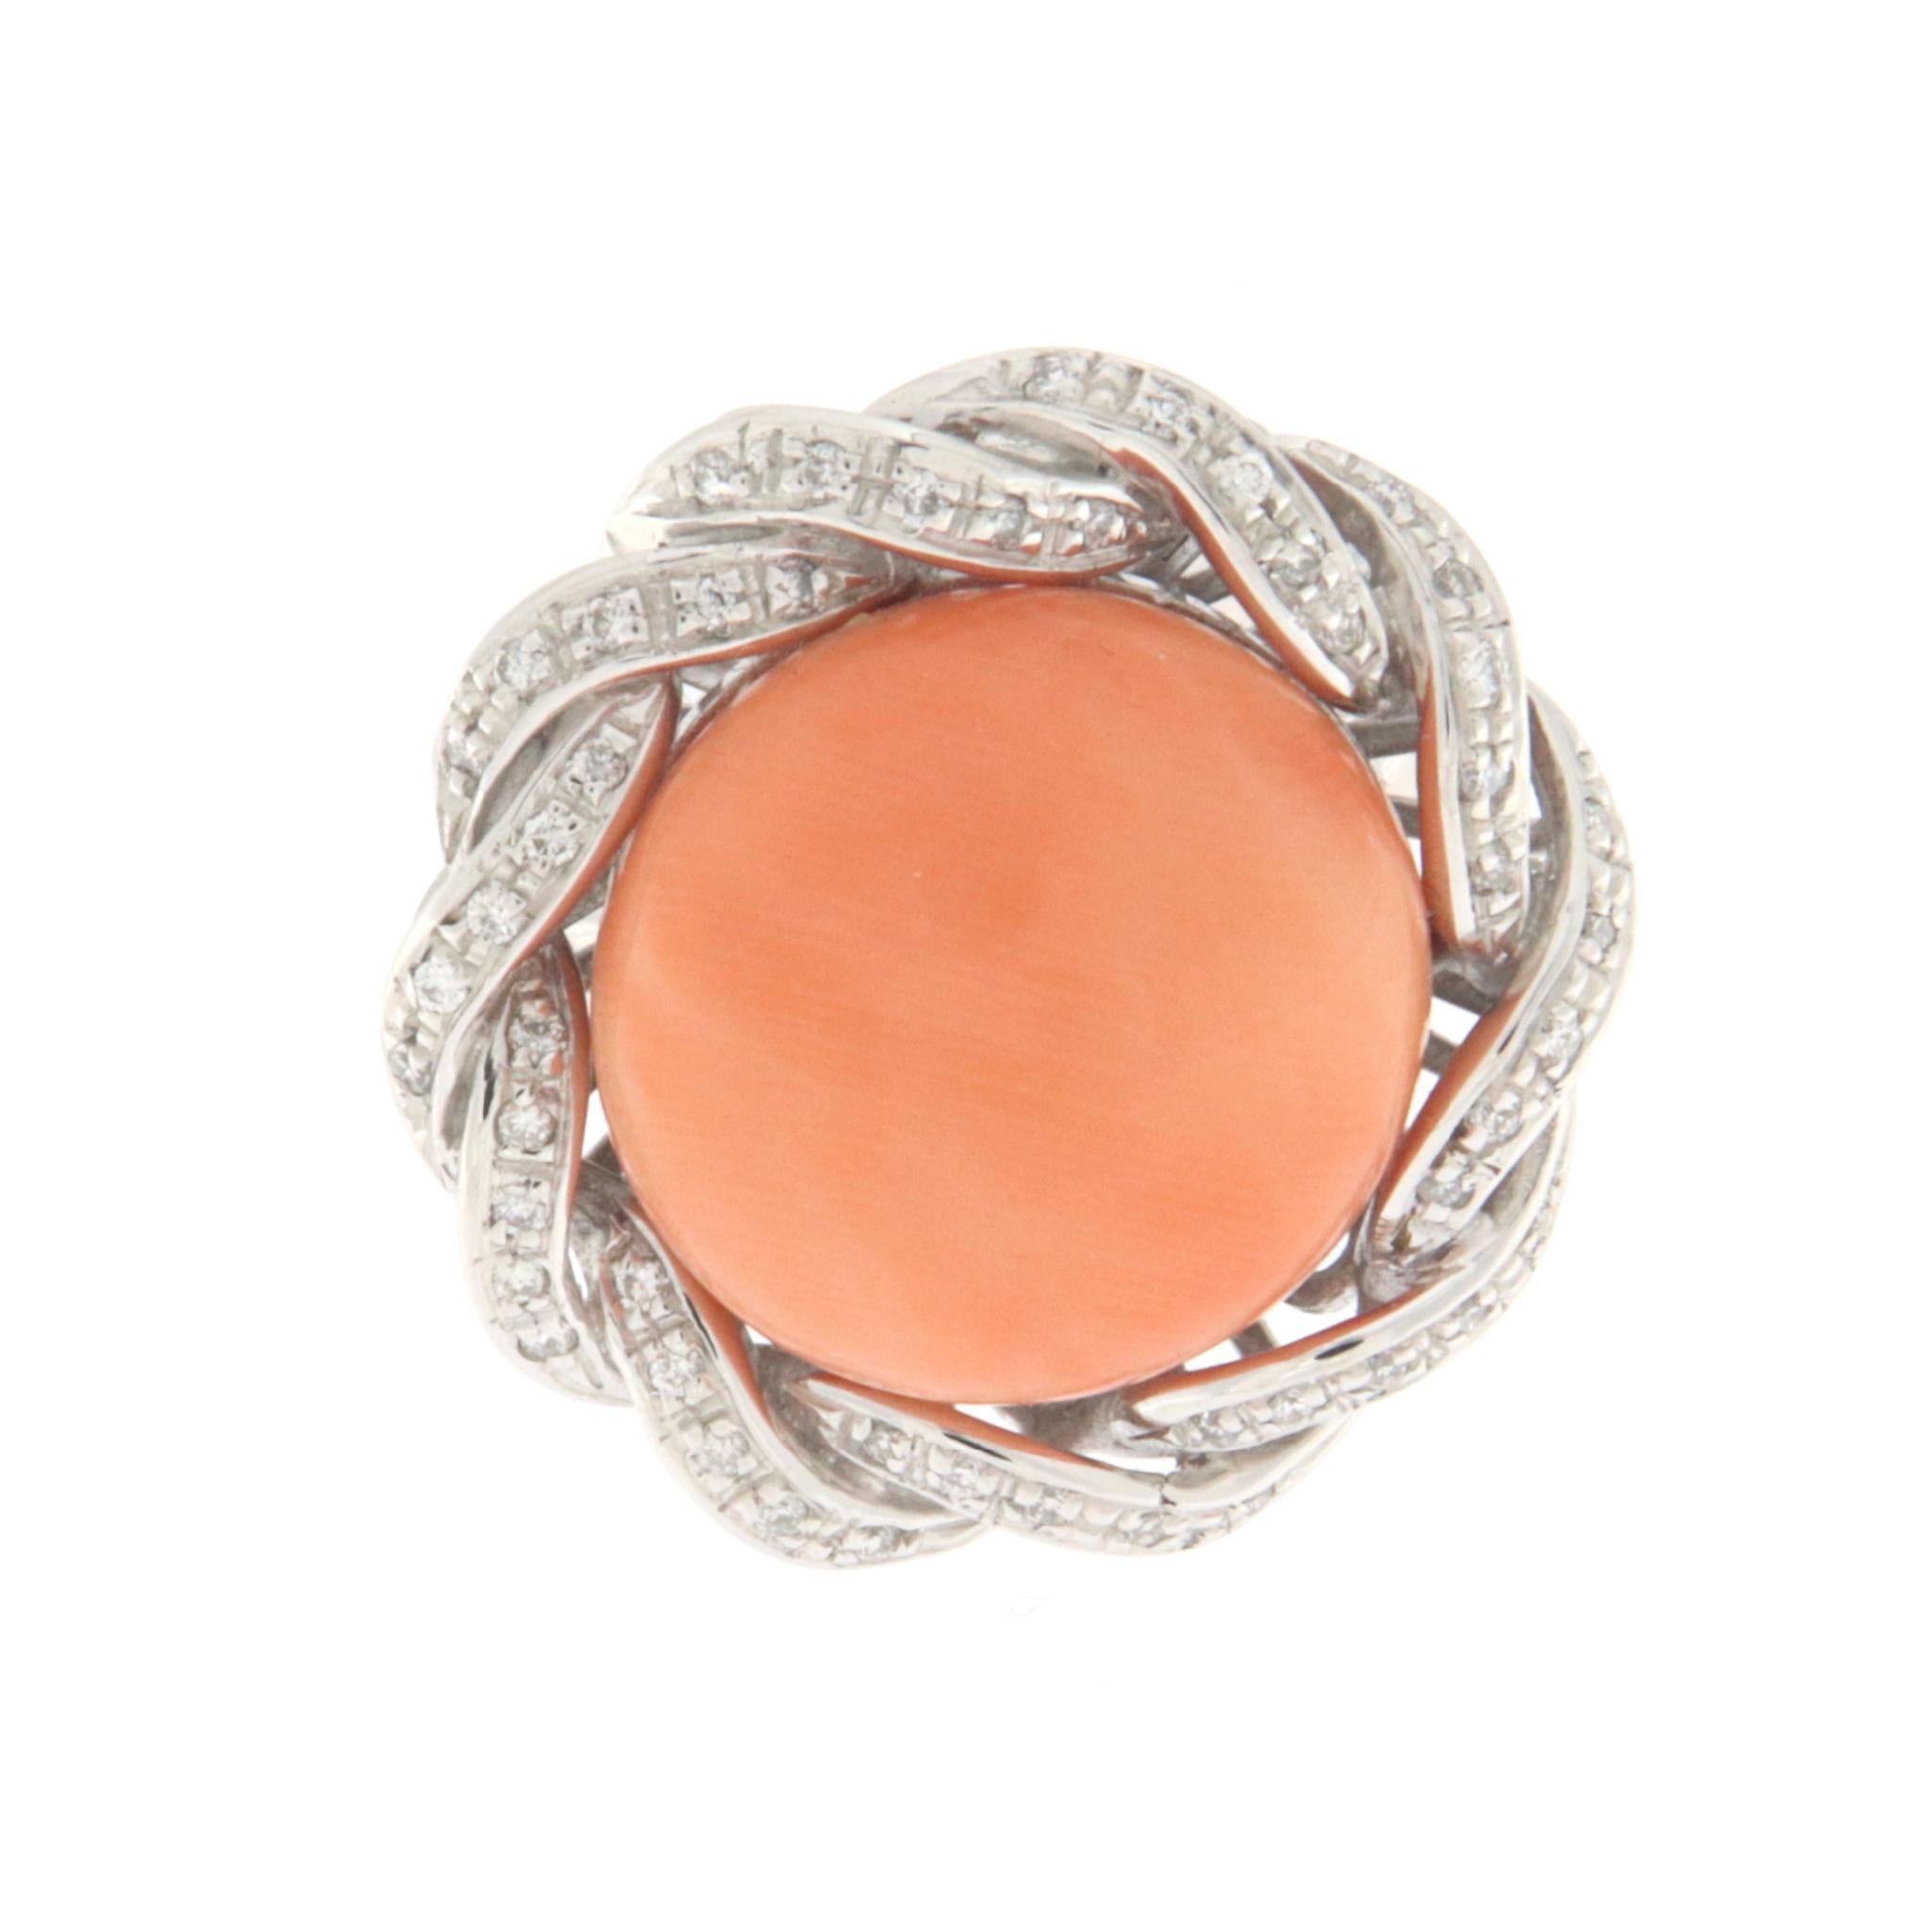 Dieser elegante Ring aus 18 Karat Weißgold verkörpert zeitgenössische Raffinesse, bereichert durch strahlende Diamanten, die eine natürliche Koralle in der Mitte meisterhaft einrahmen, die sorgfältig in eine runde, knopfähnliche Form geschnitten